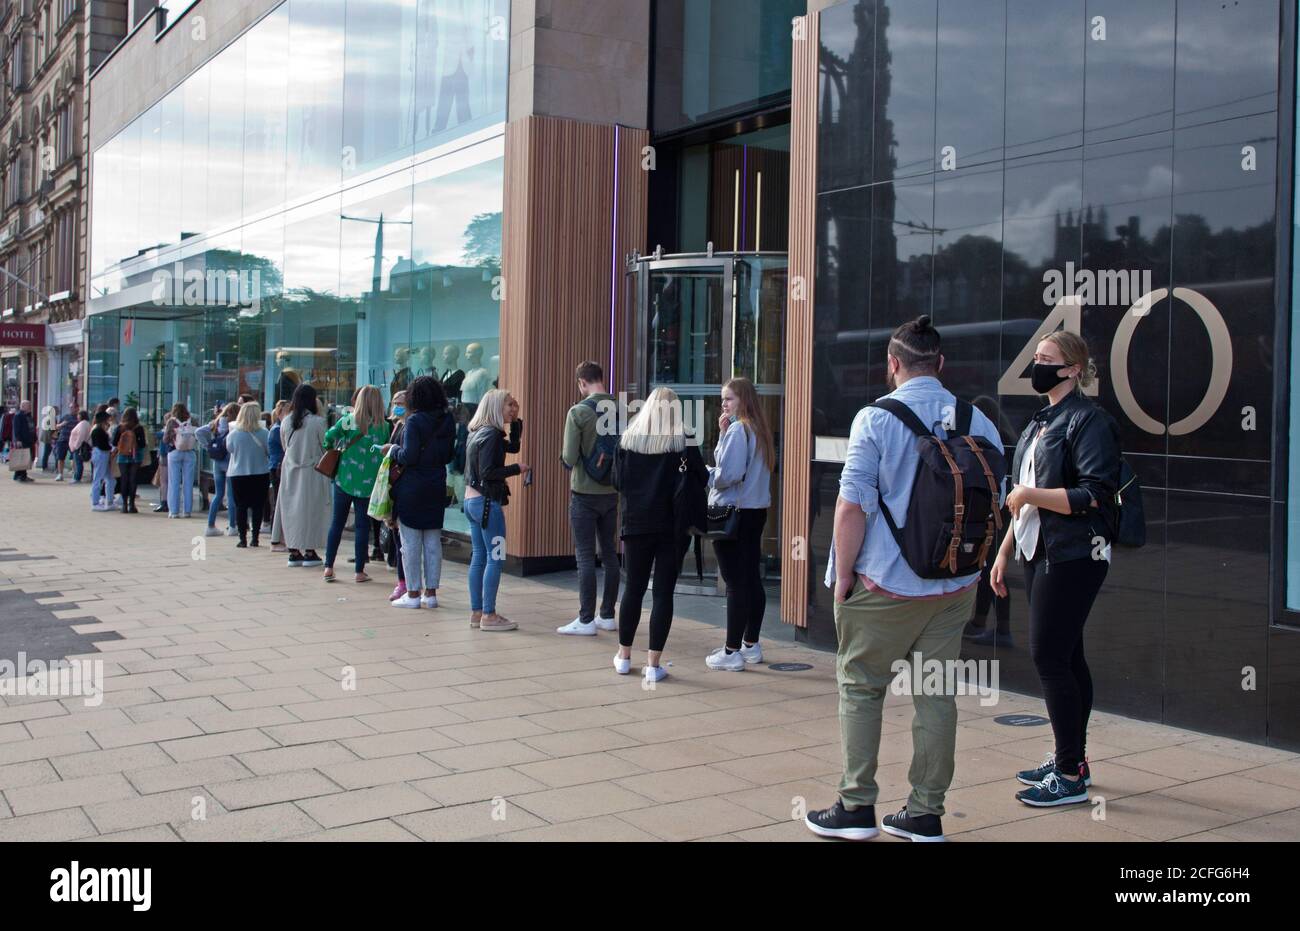 Edinburgh, Schottland, Großbritannien. September 2020. Princes Street Geschäfte lange gesellschaftlich distanzierte Warteschlangen vor den Geschäften am Samstagnachmittag. Im Bild stehen junge Leute vor H&M. Quelle: Arch White/ Alamy Live News. Stockfoto